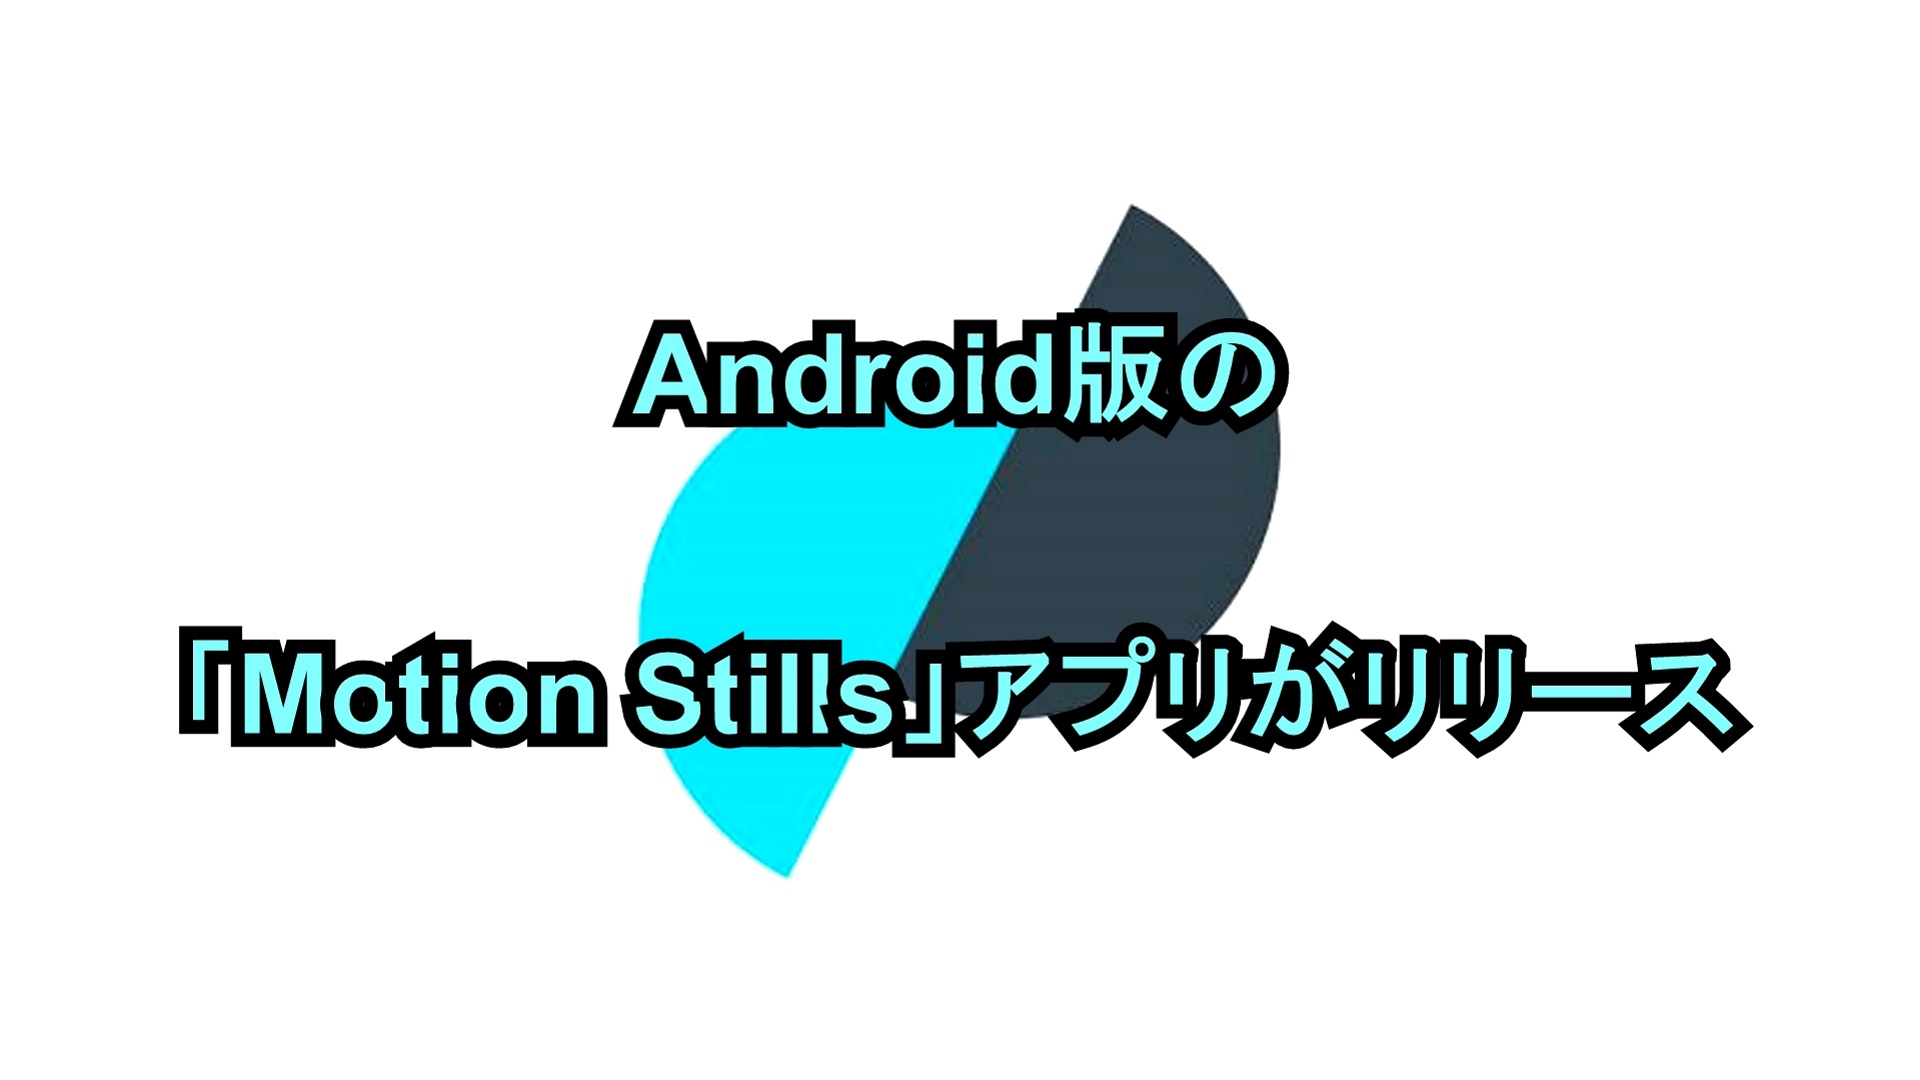 Android版の「Motion Stills」アプリがリリース